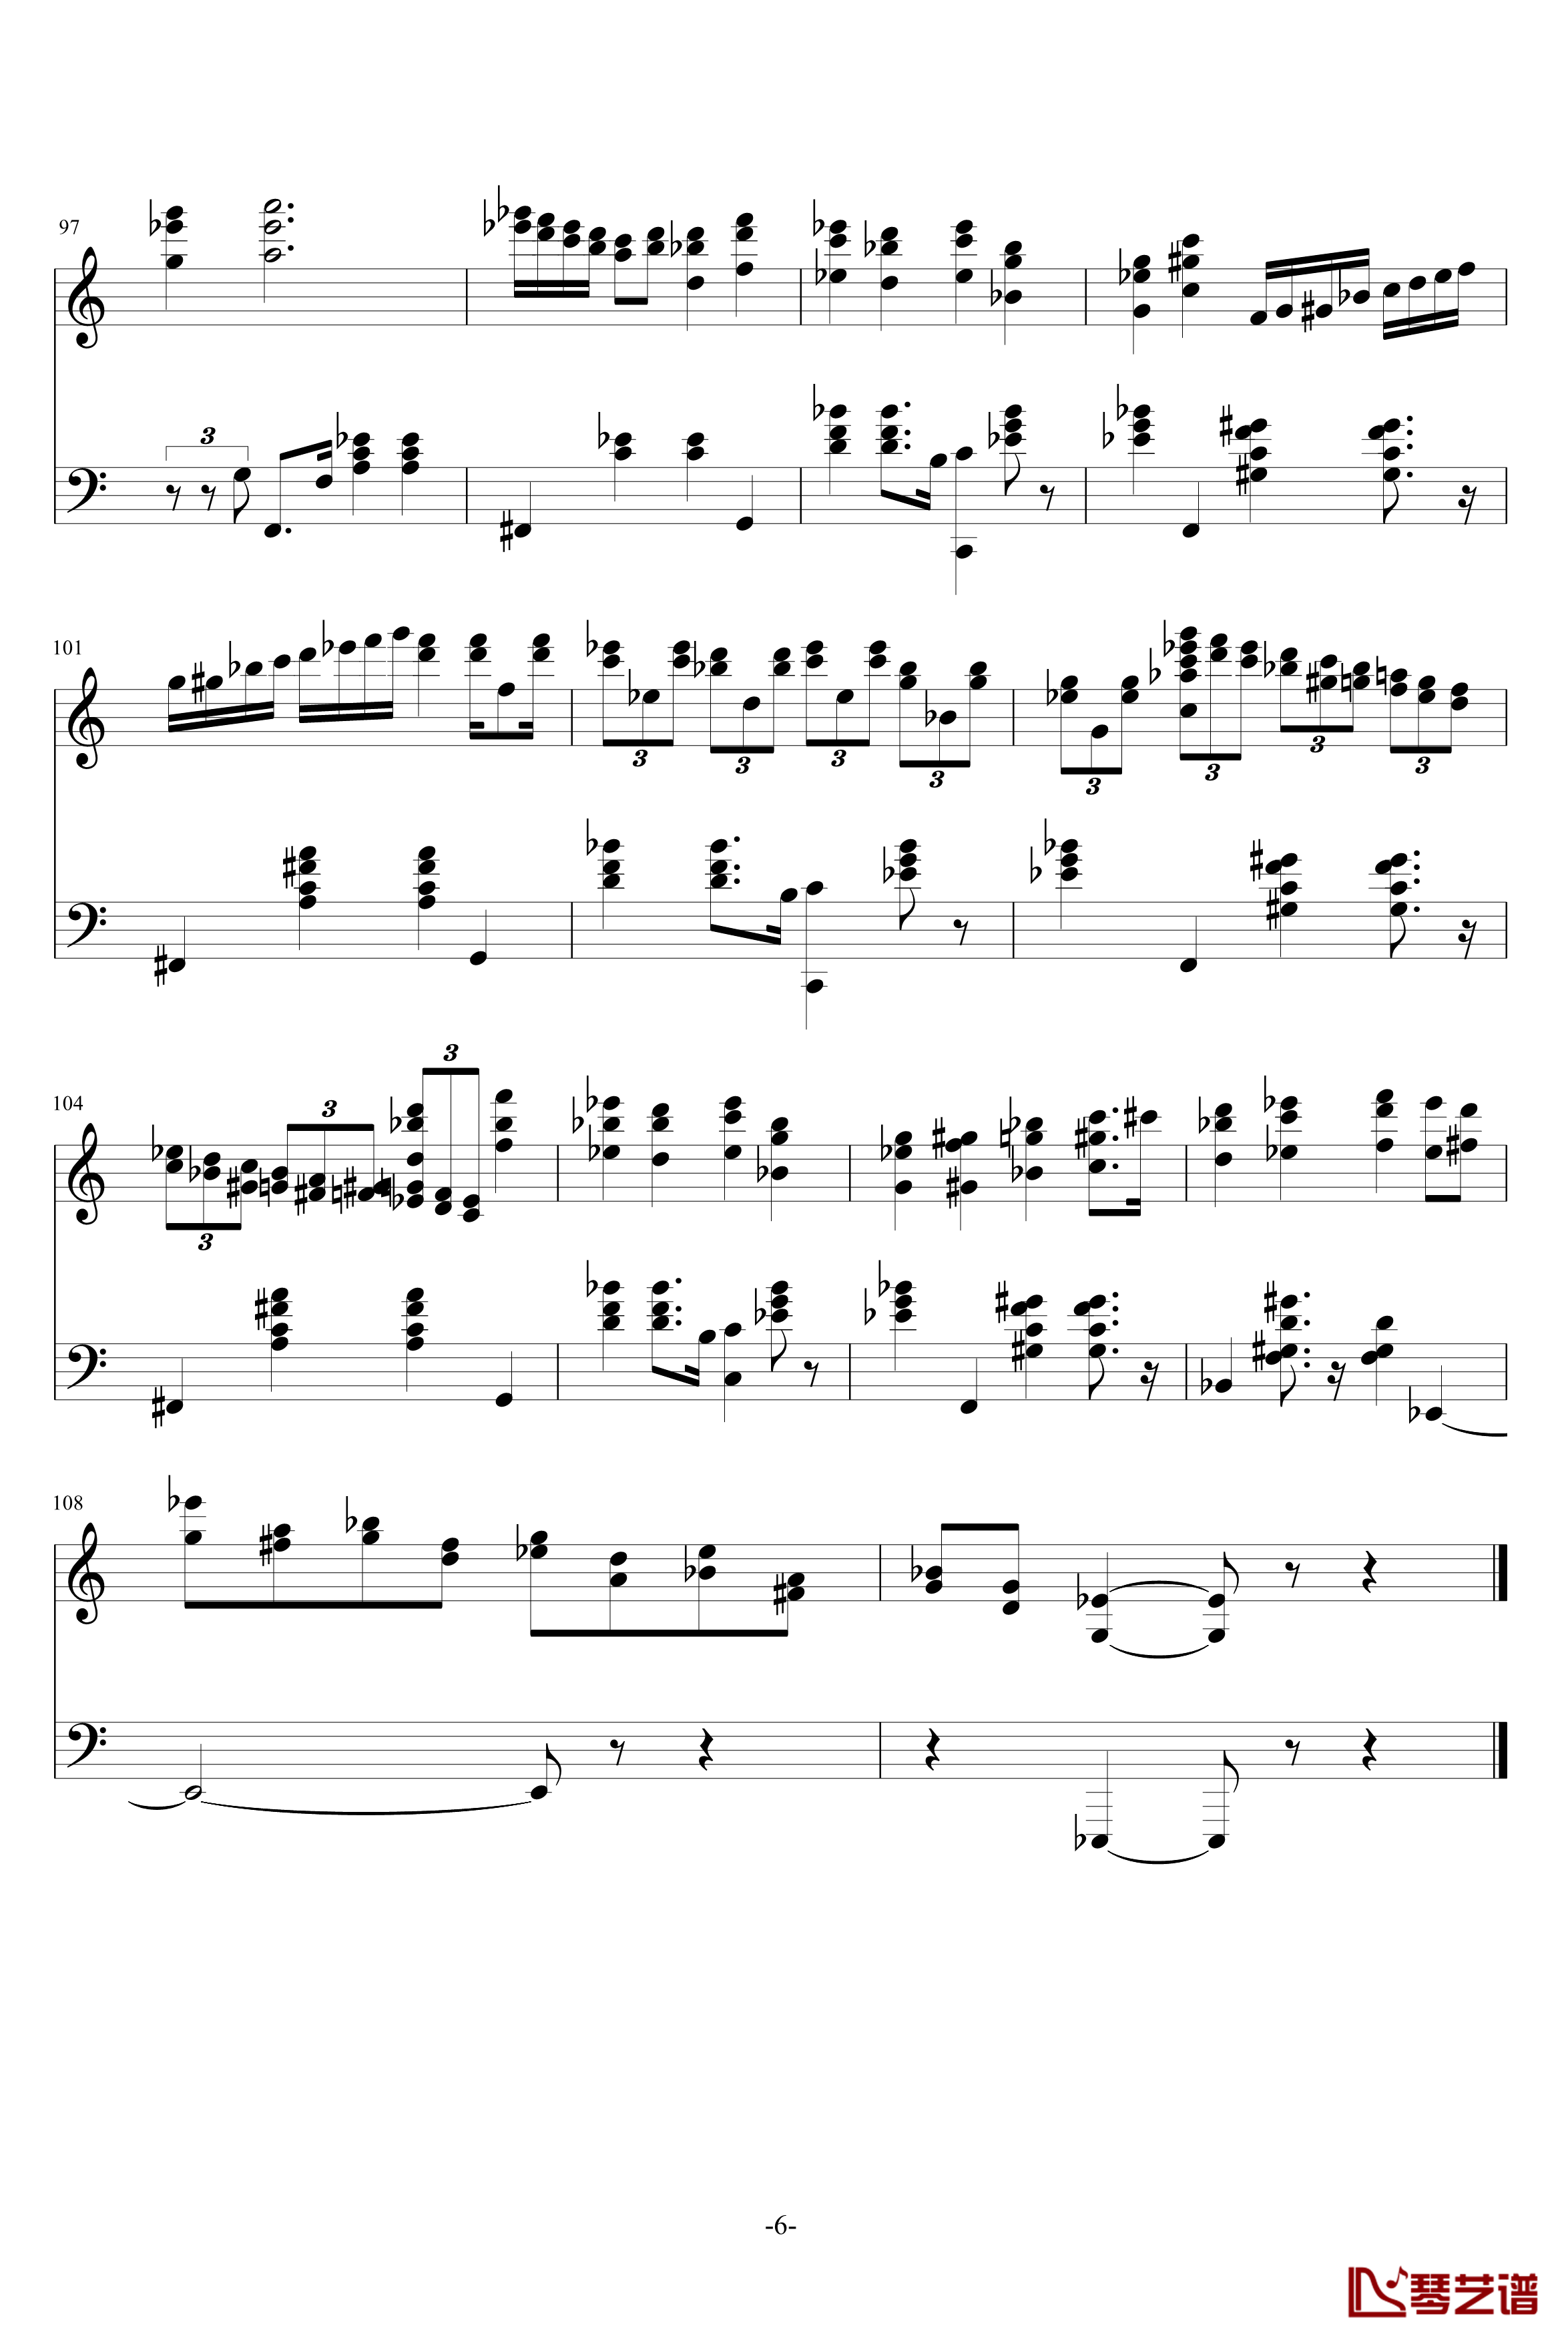 Magic Waltz钢琴谱-基本接近原版-海上钢琴师6